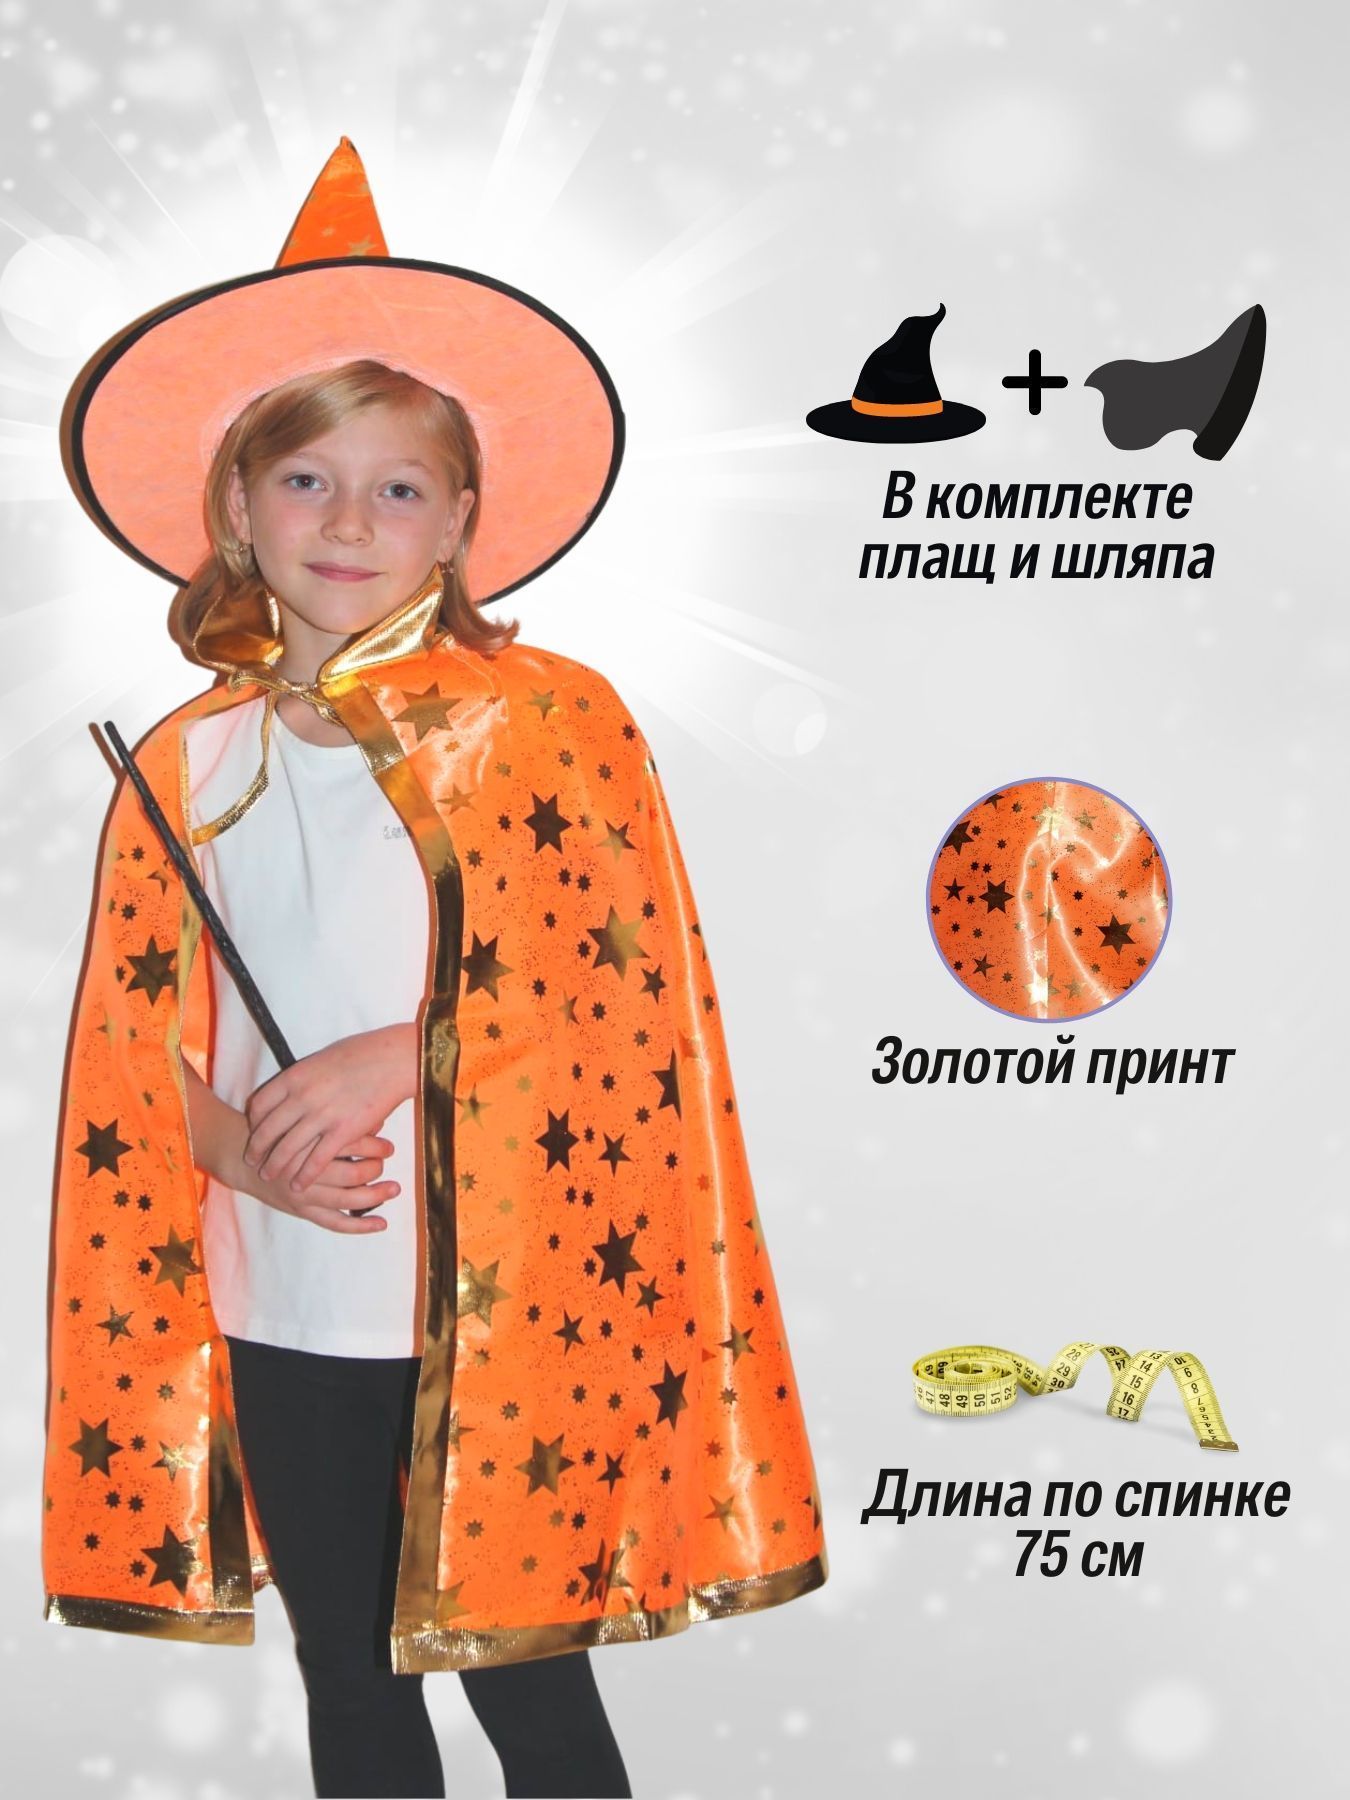 Карнавальный костюм STAREX Звездопад, оранжевый, 60-64